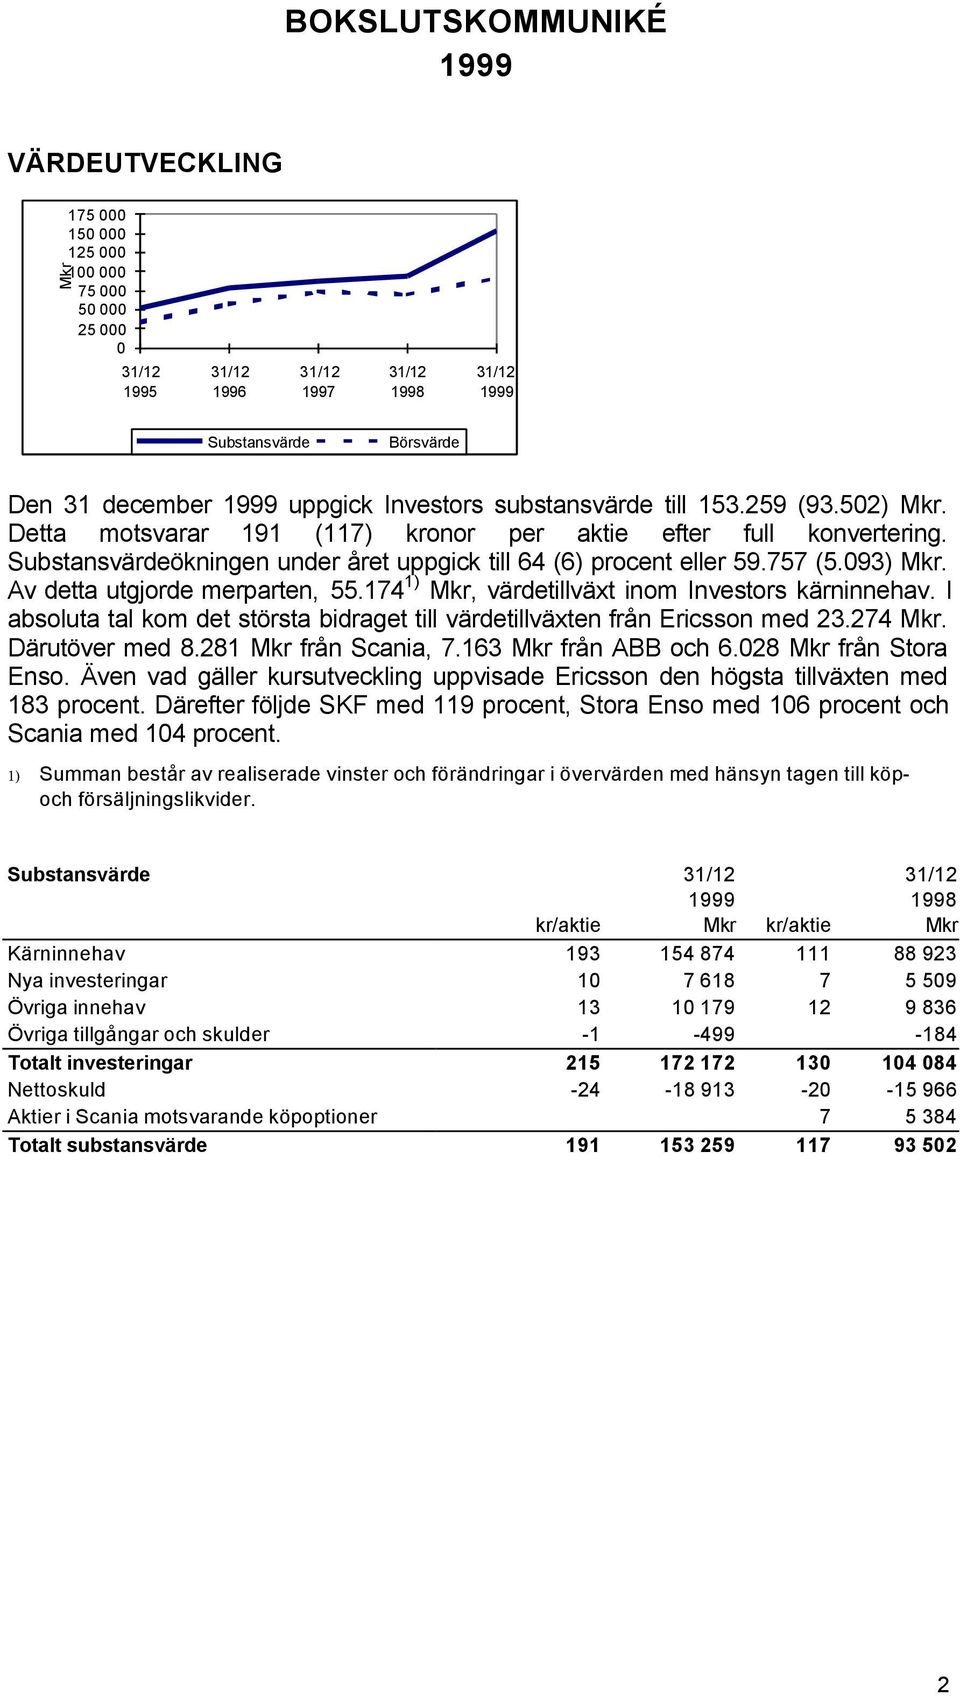 Av detta utgjorde merparten, 55.174 1) Mkr, värdetillväxt inom Investors kärninnehav. I absoluta tal kom det största bidraget till värdetillväxten från Ericsson med 23.274 Mkr. Därutöver med 8.